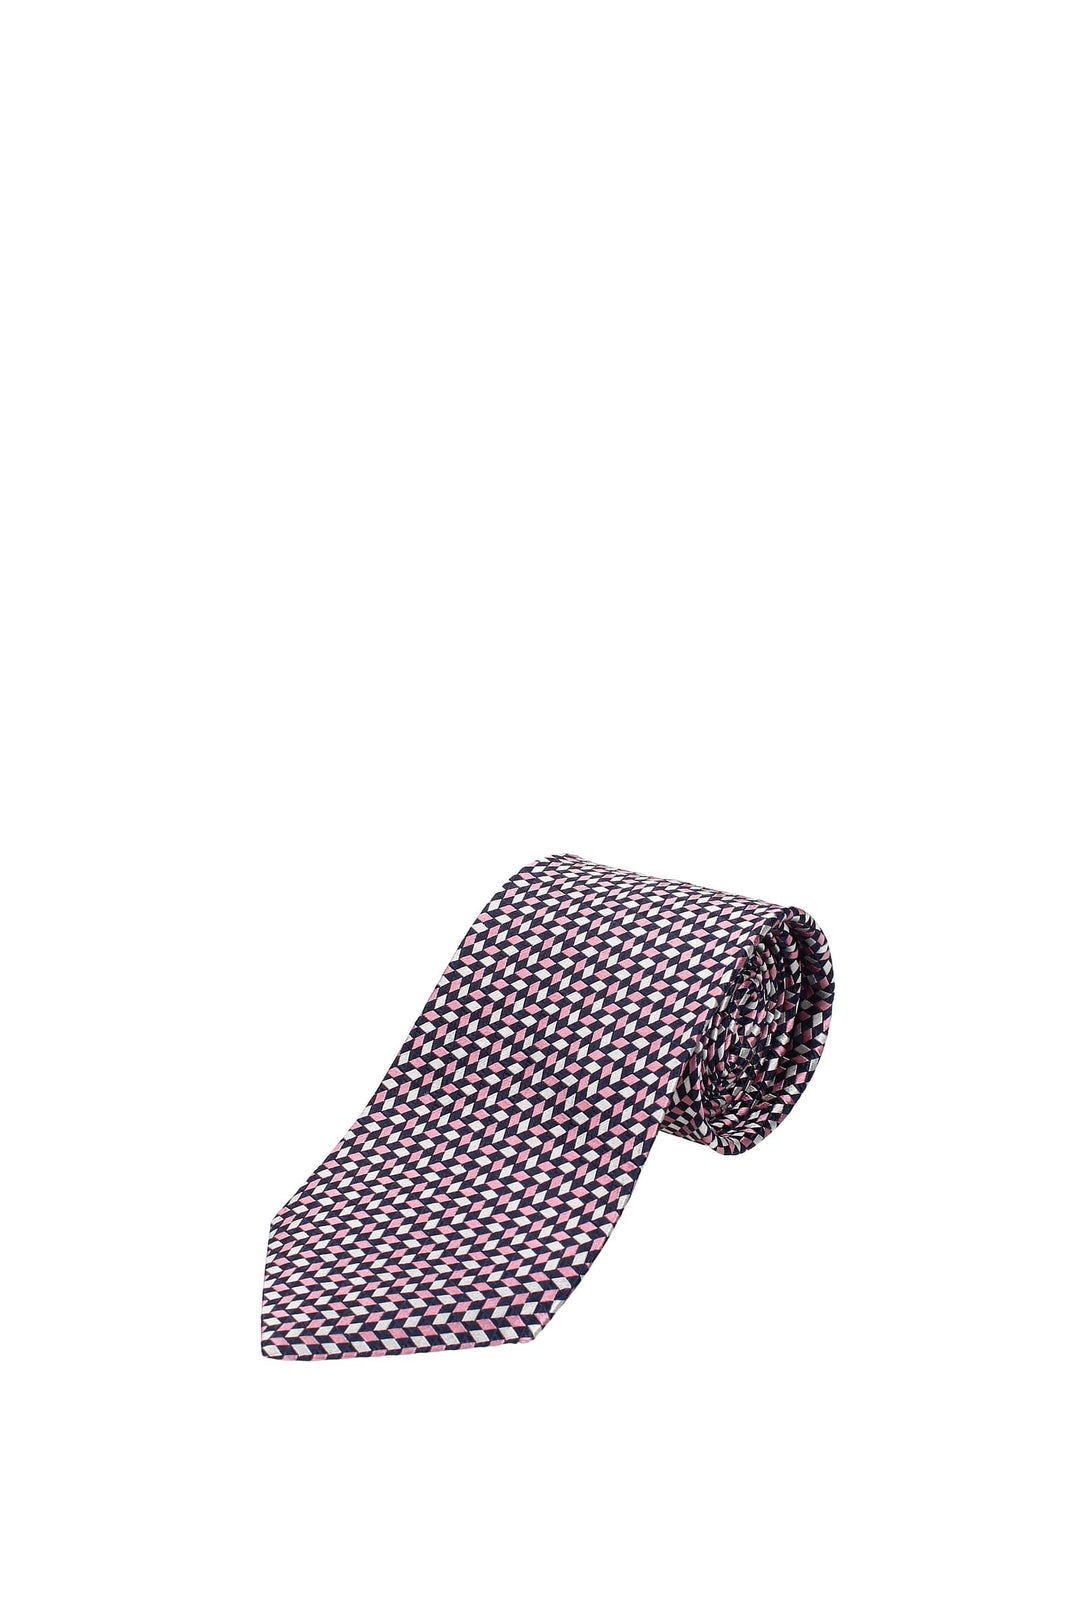 Cravatte Seta Rosa - Zegna - Uomo